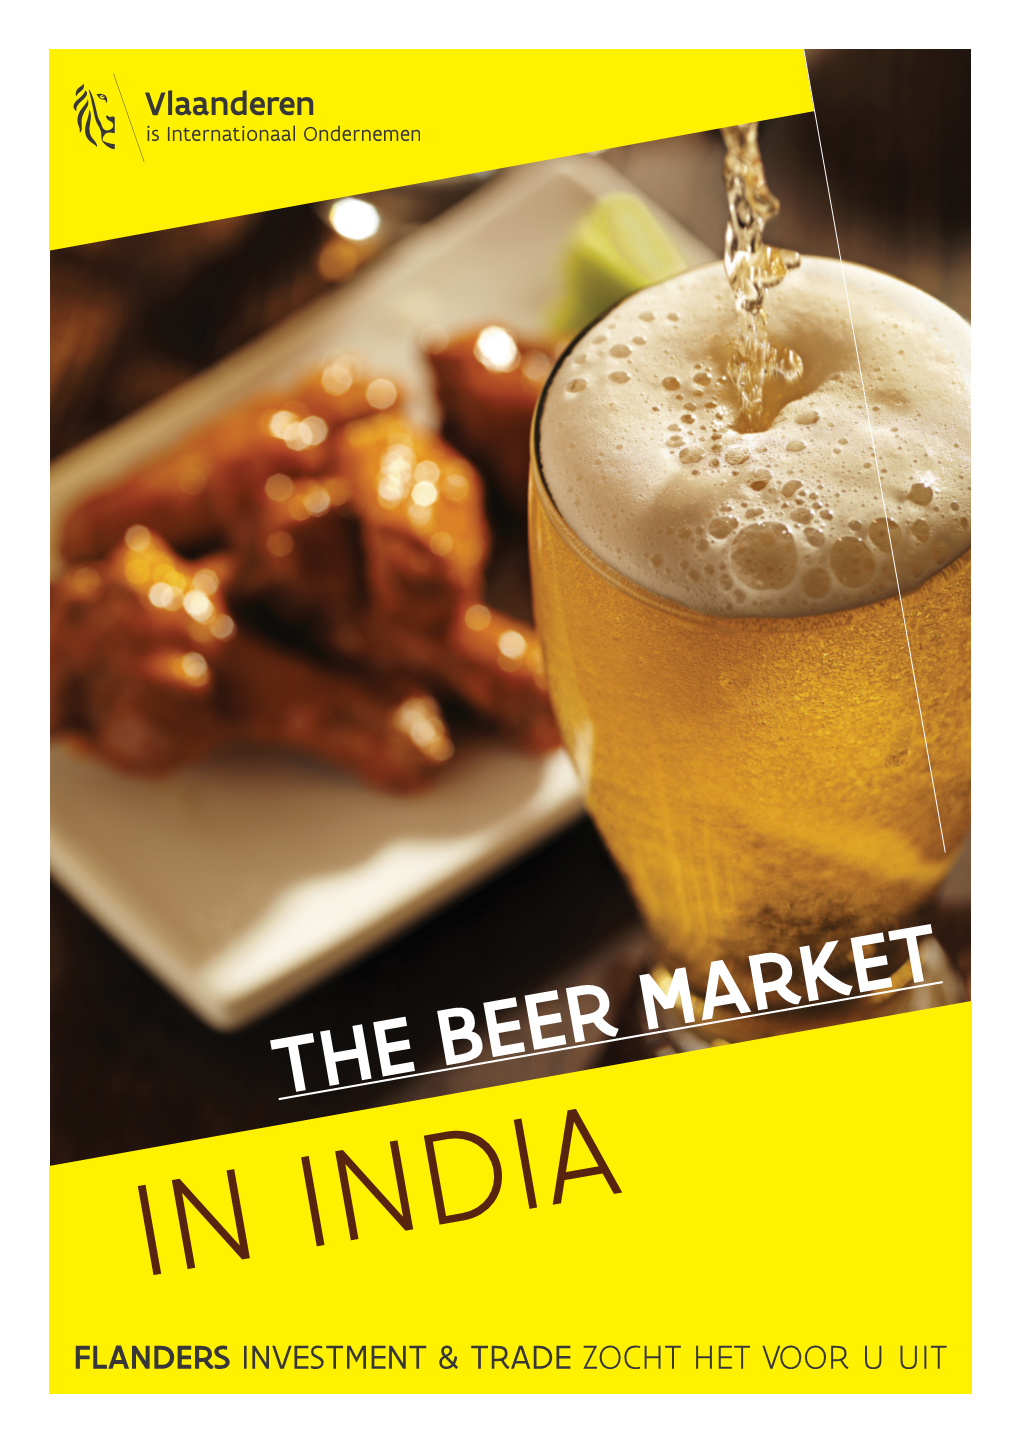 The Beer Market in India Flanders Investment & Trade Zocht Het Voor U Uit